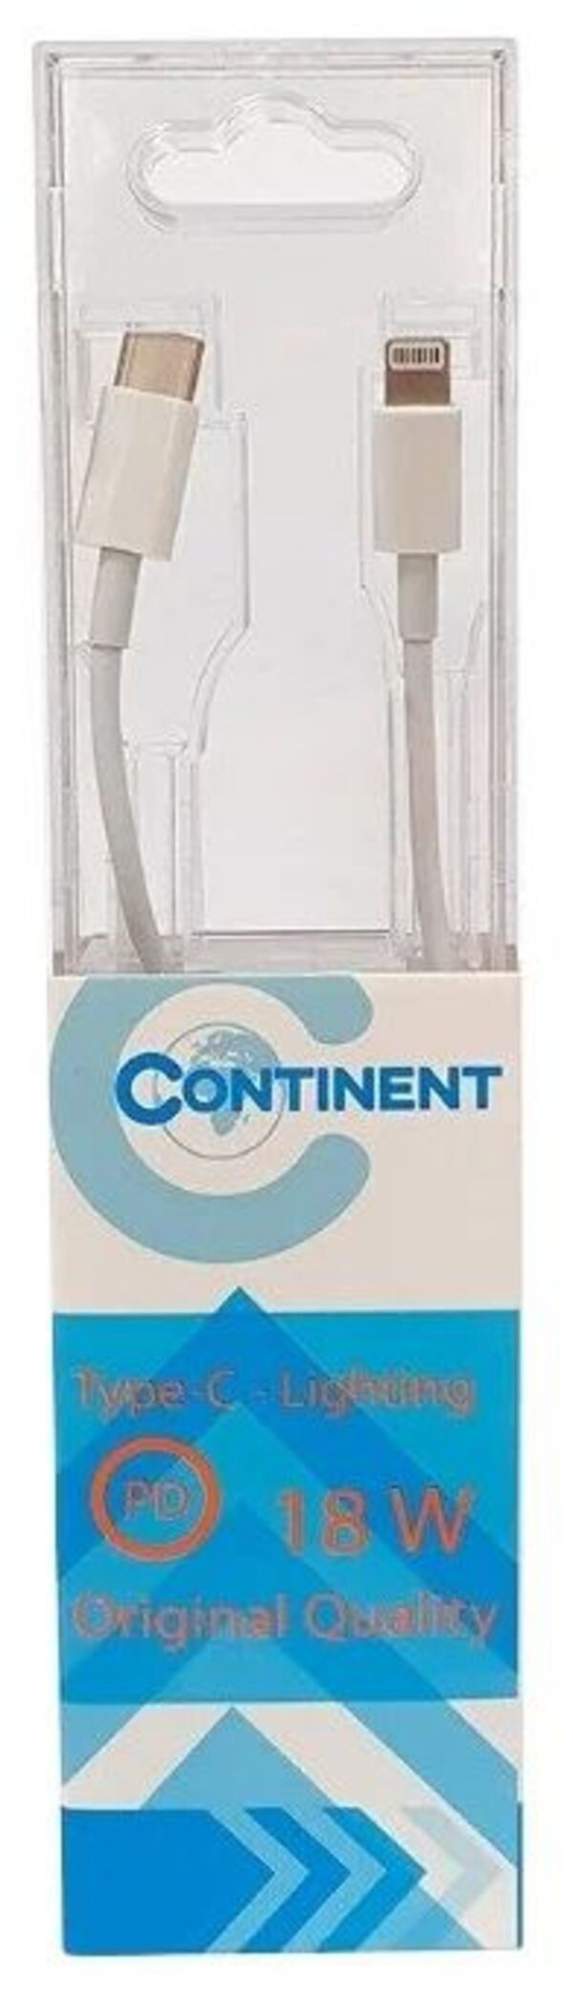 Кабель Continent DCI-2109WT, купить в Москве, цены в интернет-магазинах на Мегамаркет